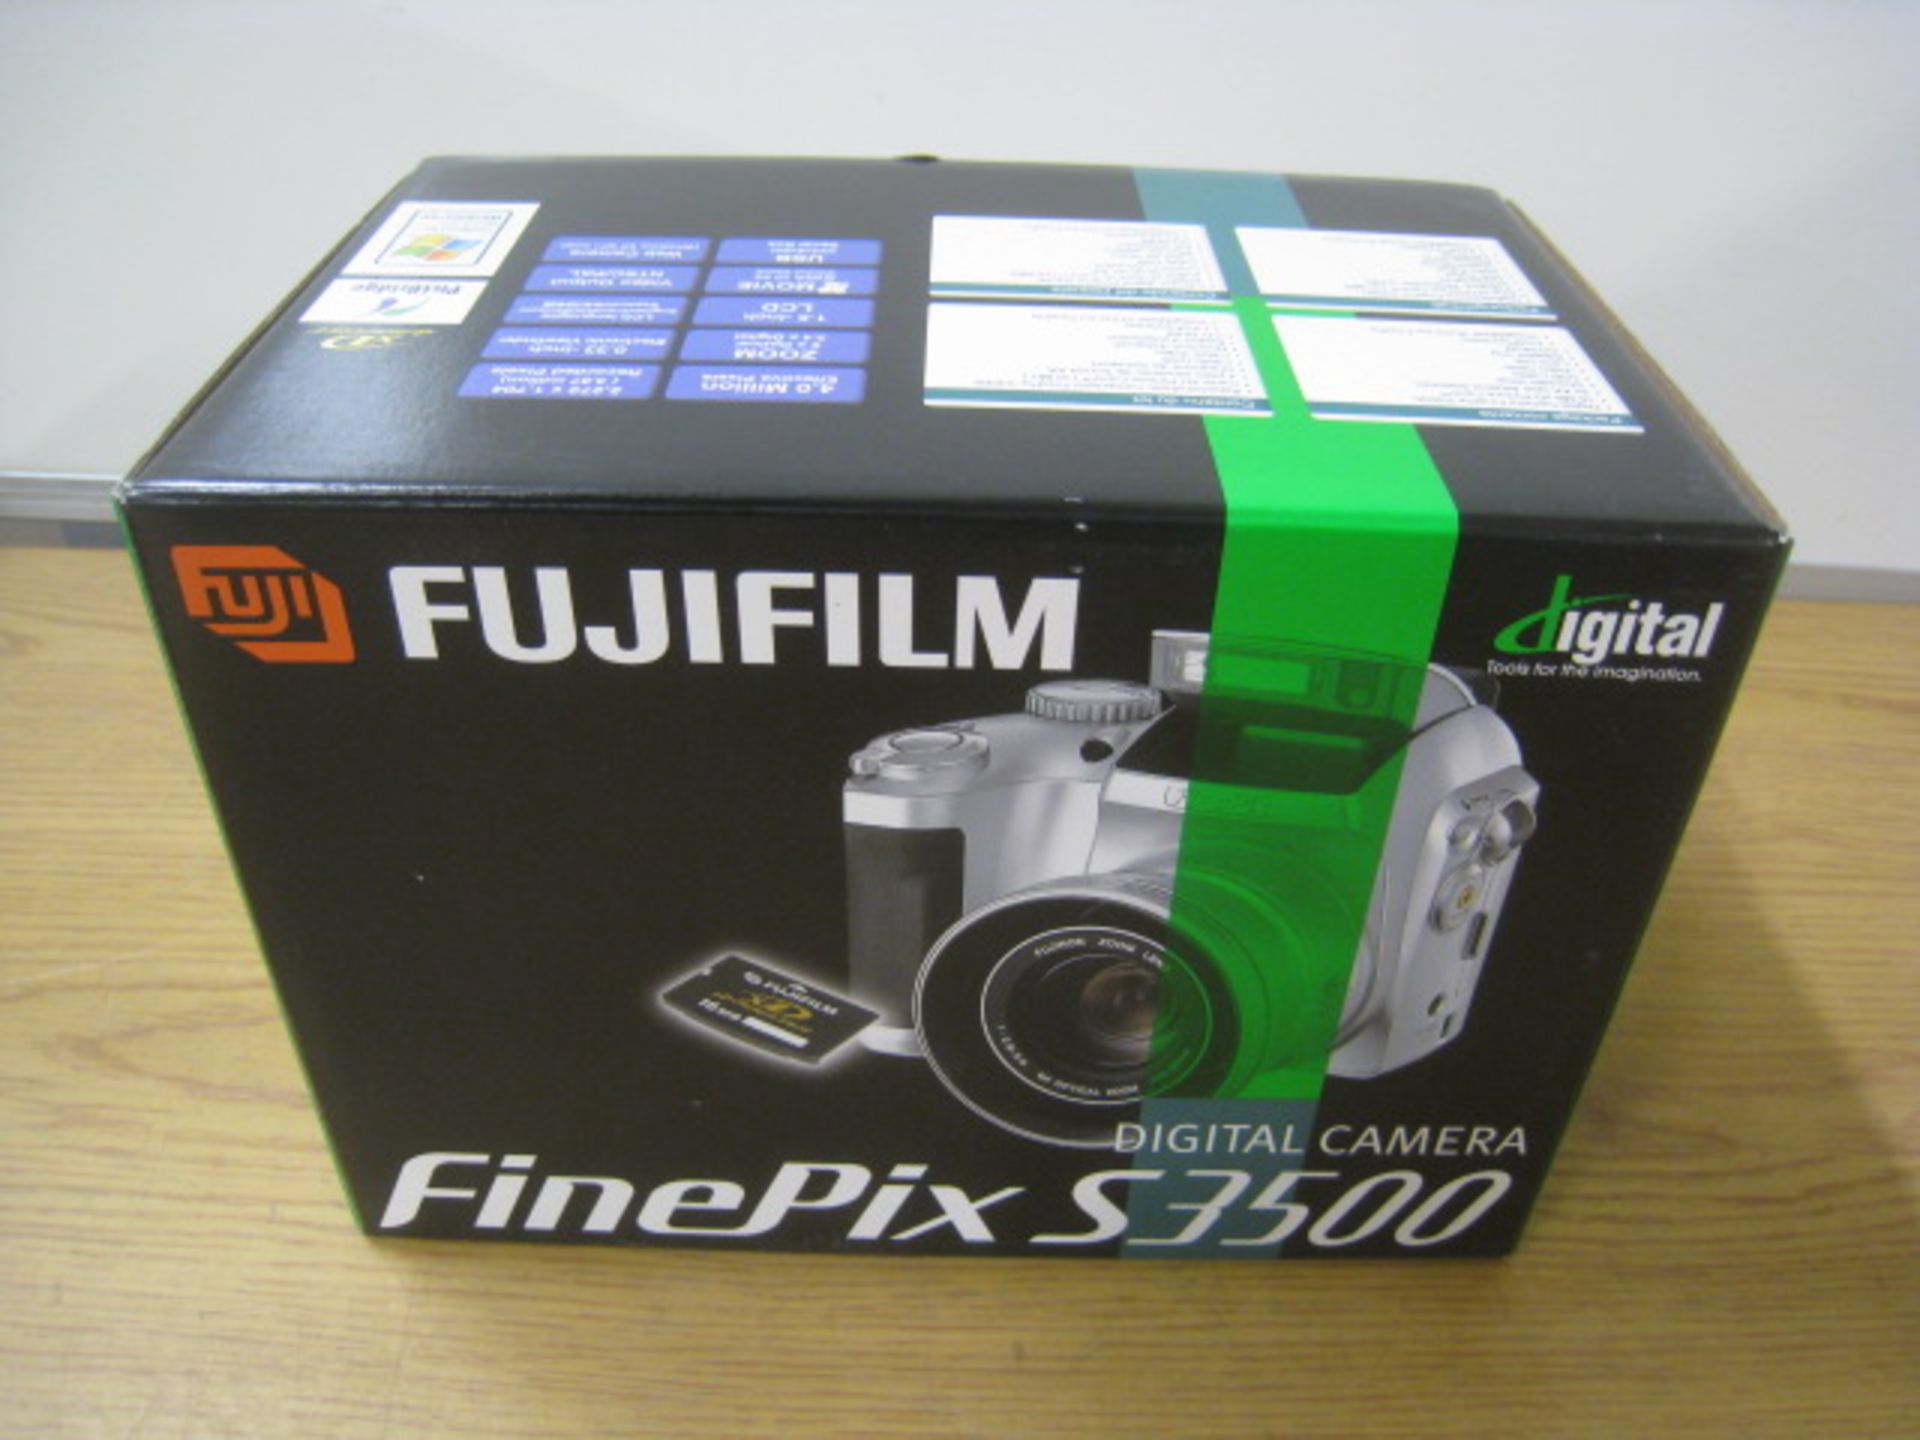 FUJIFILM FINEPIX S3500 DIGITAL CAMERA. NEW AND BOXED